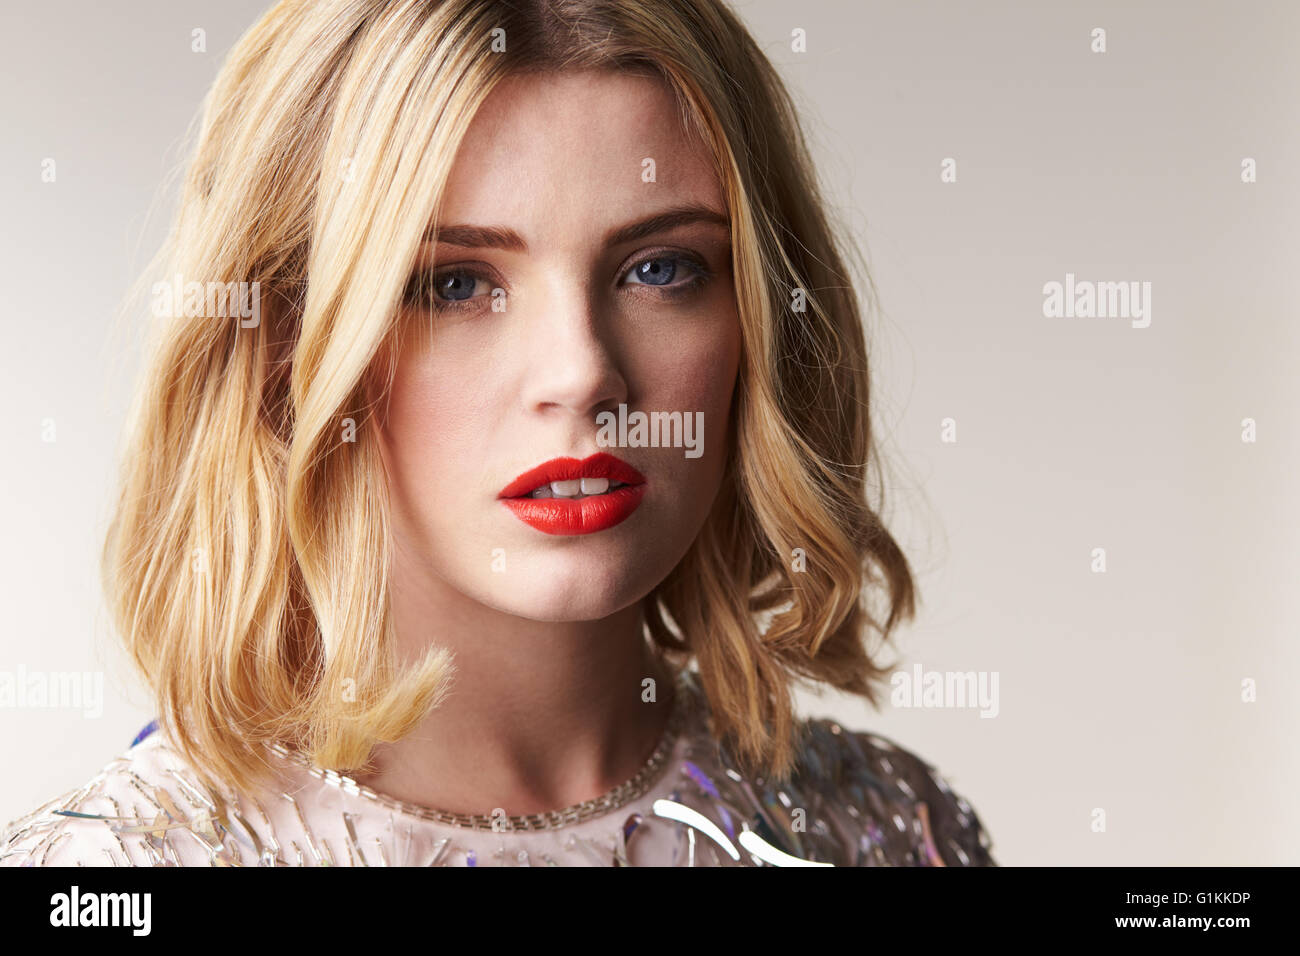 Glamorous blonde woman ressemble à l'appareil photo, portrait horizontal Banque D'Images